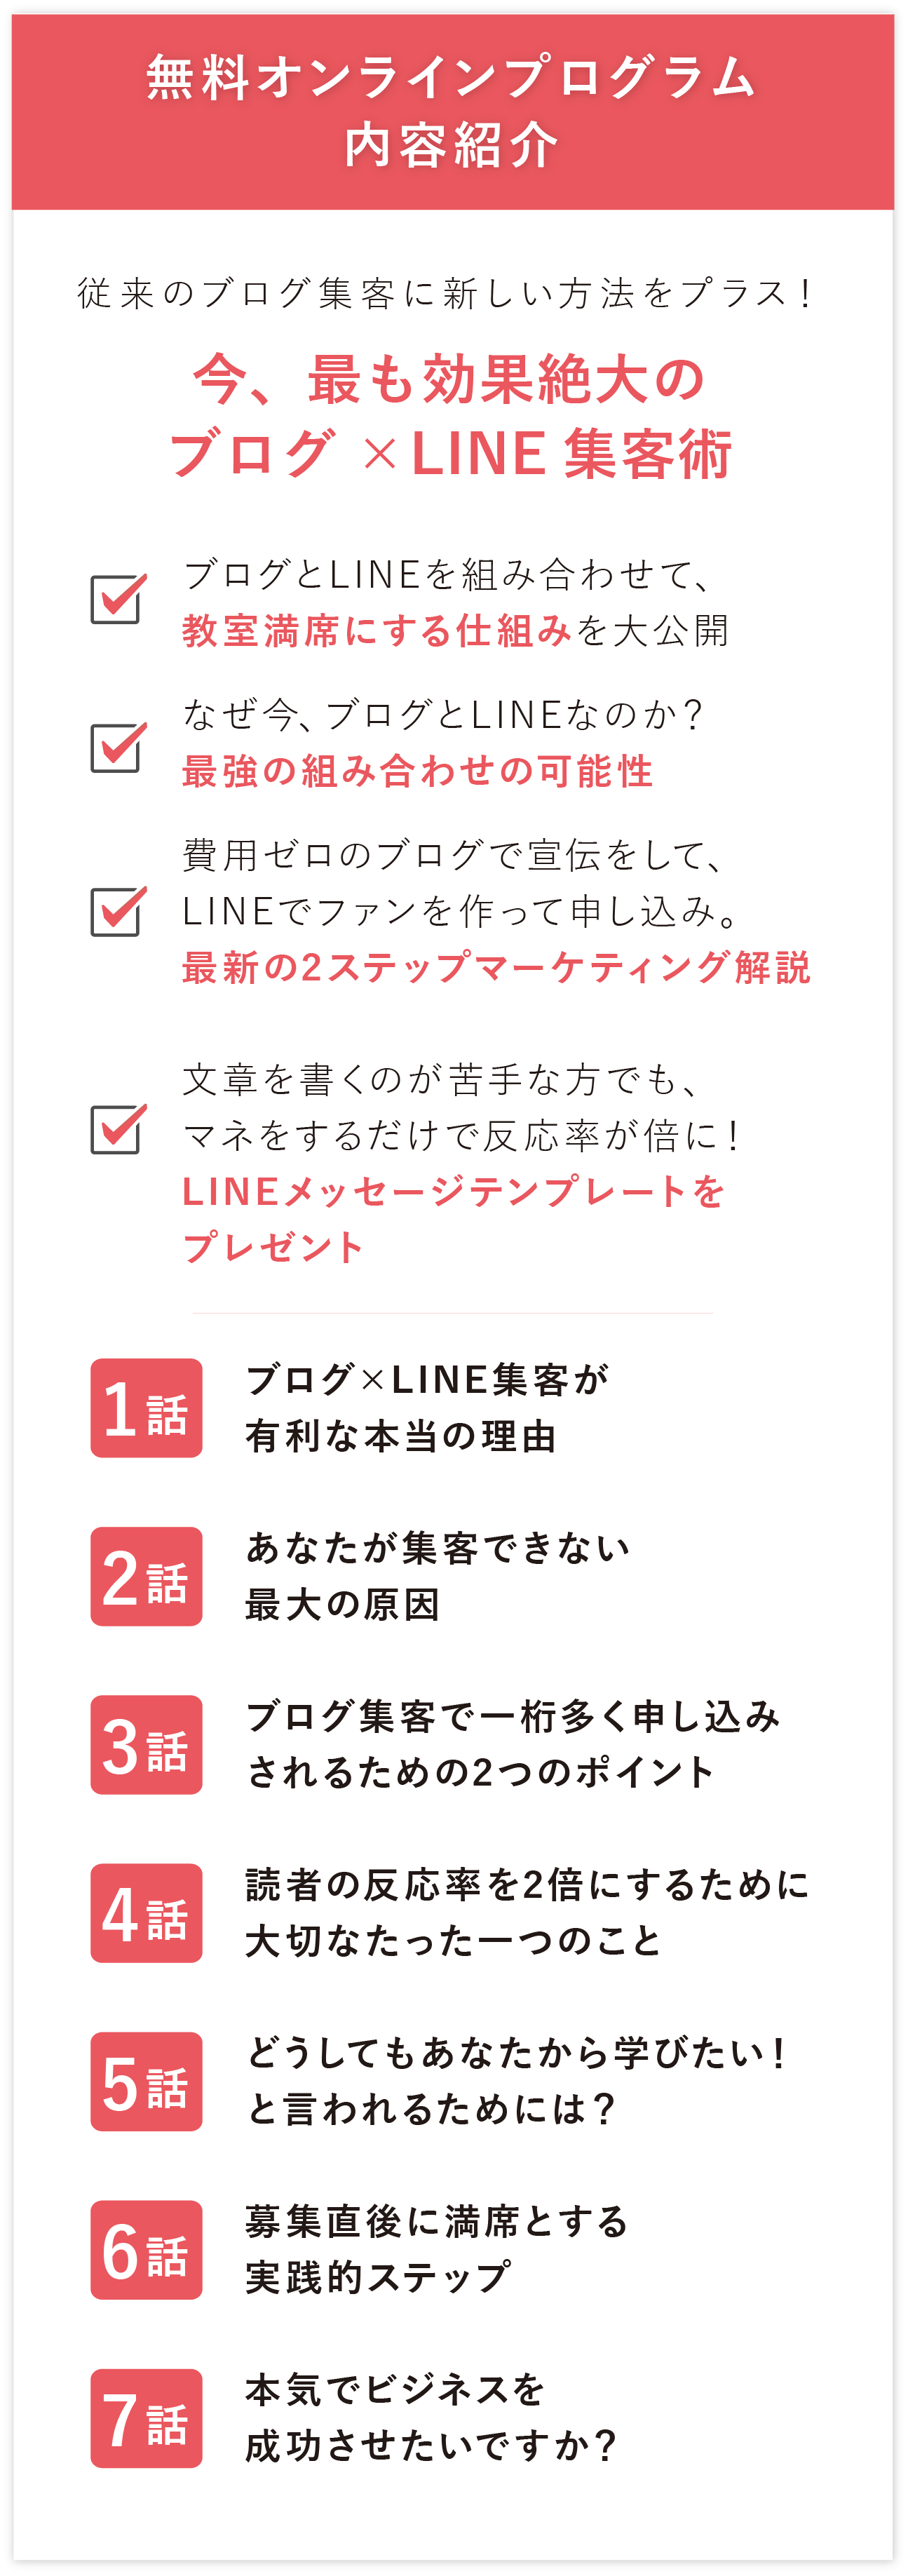 ブログ,LINE@集客,無料オンラインプログラム